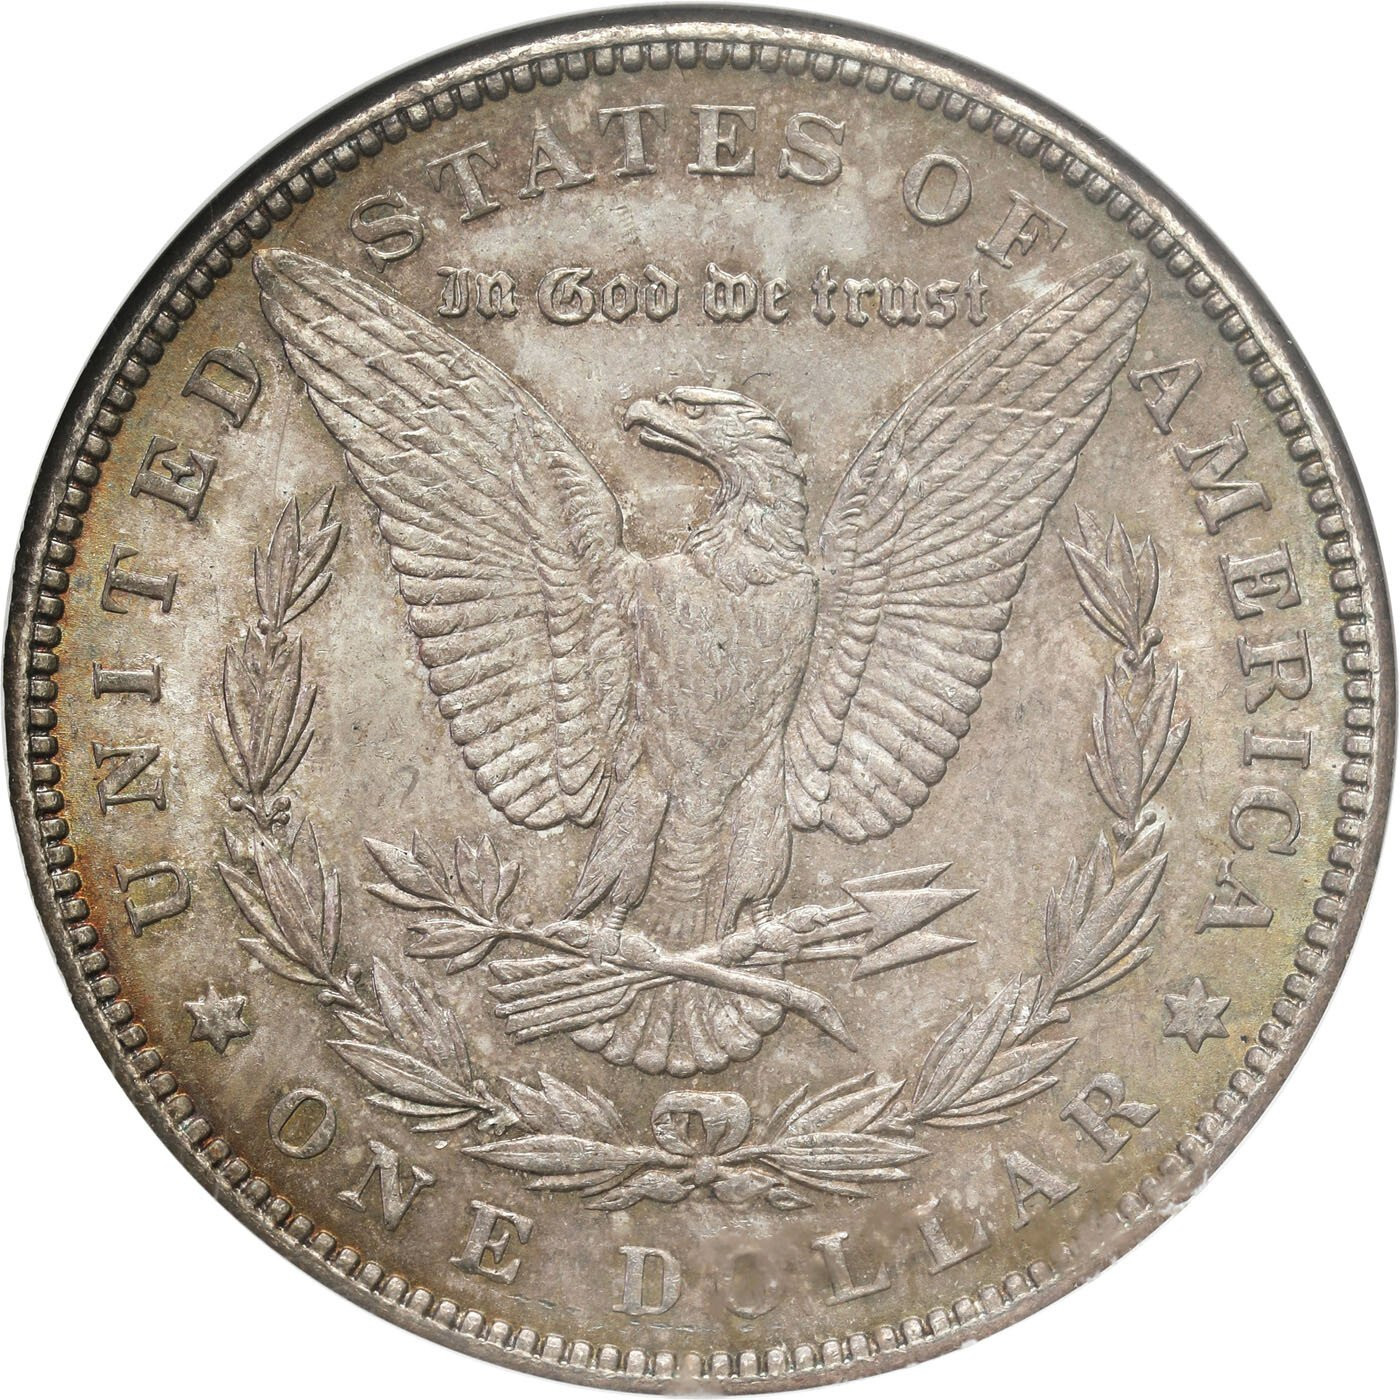 USA. Dolar 1889, Filadelfia GCN MS63 - ŁADNE